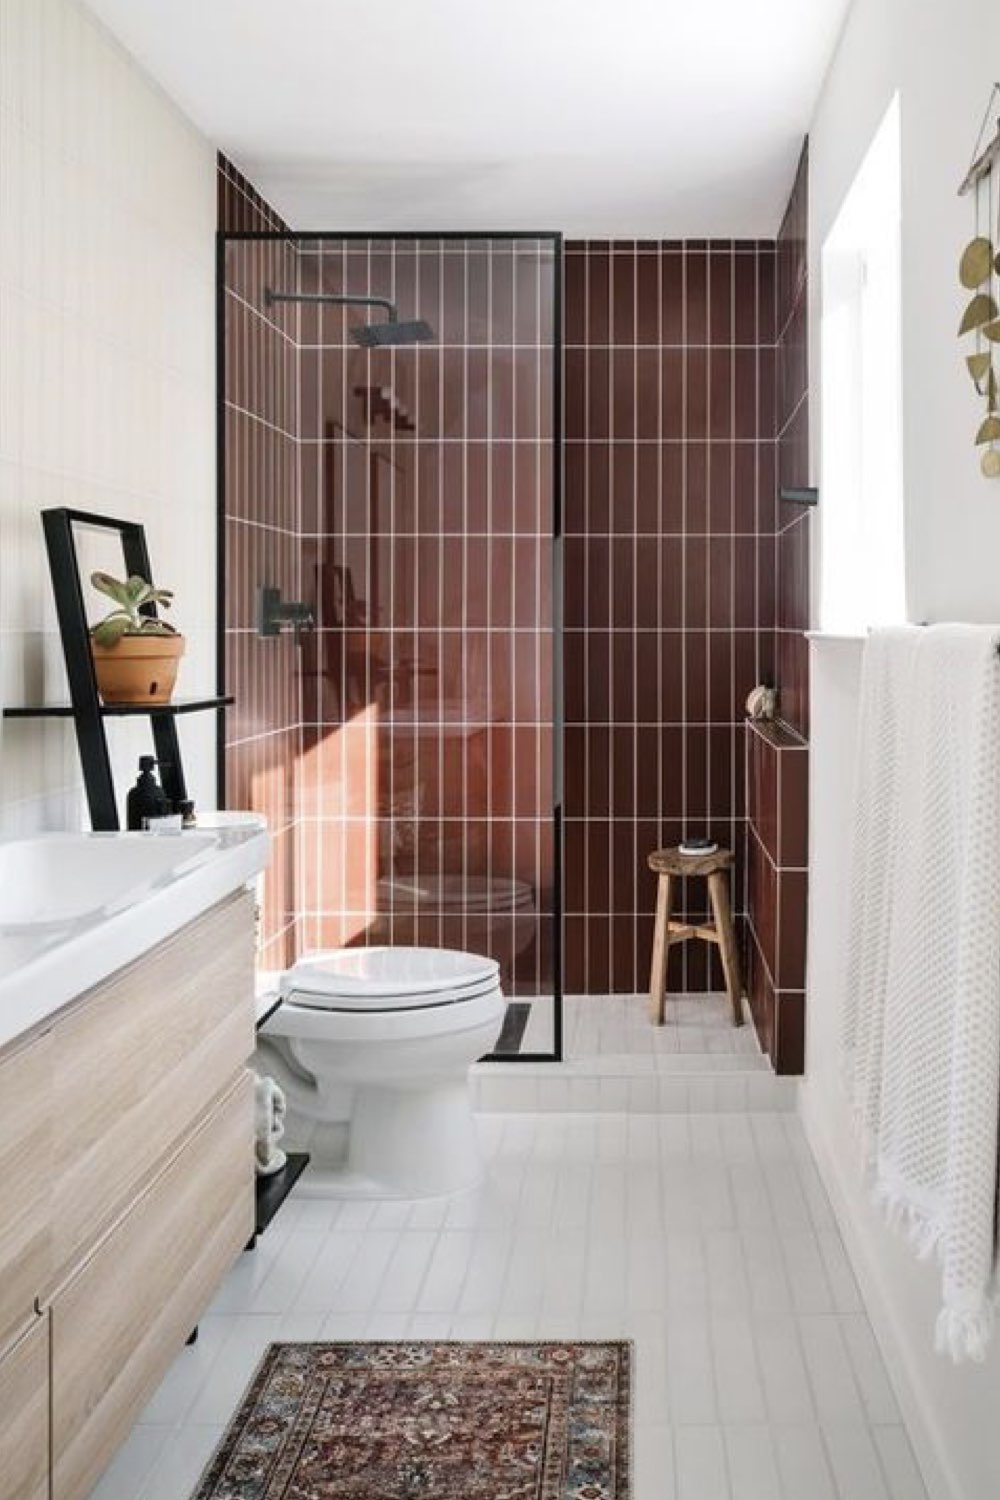 salle de bain douche deco detente tout en longeur carrelage bordeaux chic contraste blanc effet profondeur meuble vasque en bois